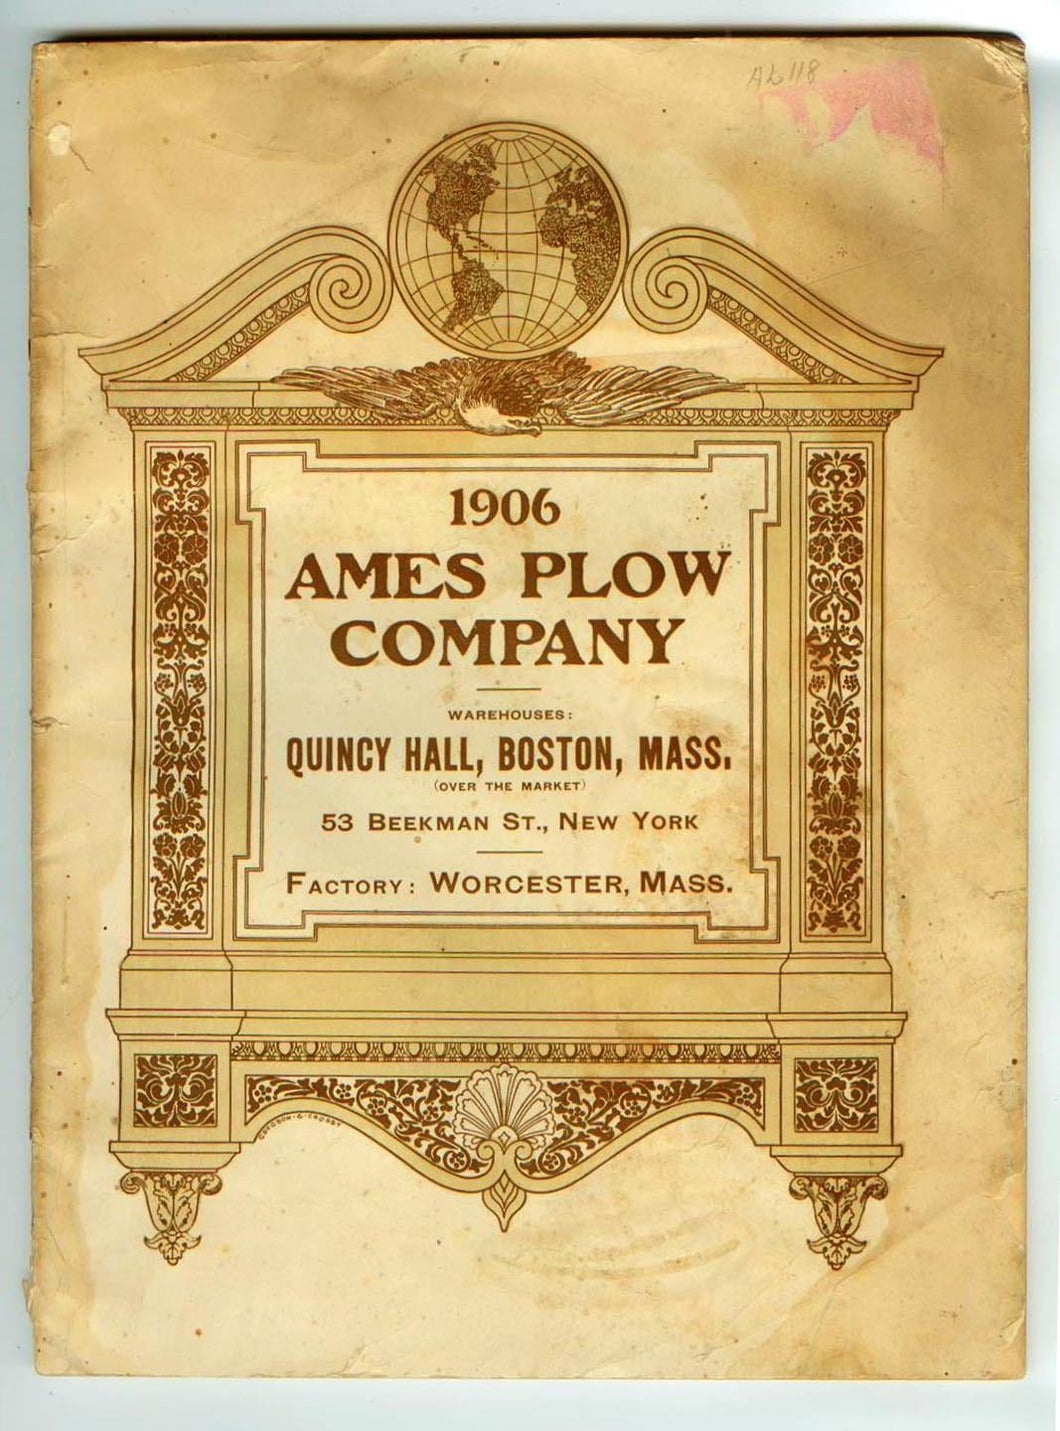 Ames Plow Company catalogue 1906